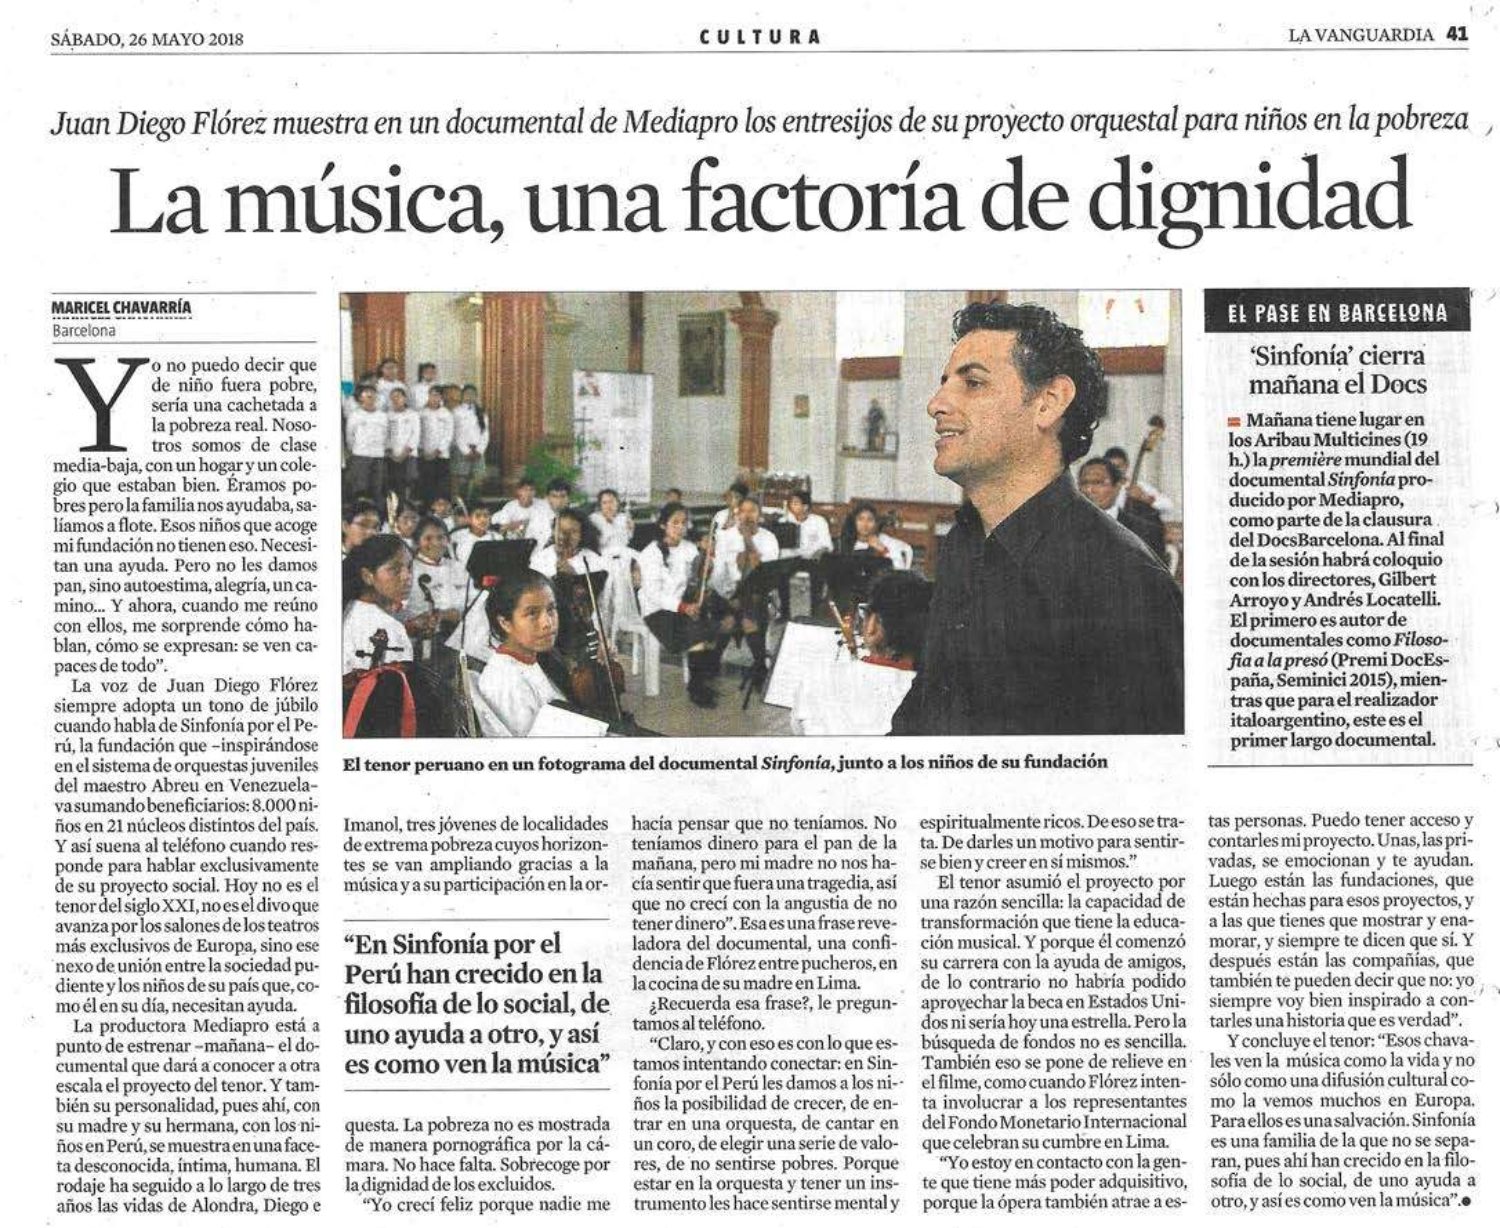 La música, una factoría de dignidad,&quot; La Vanguardia